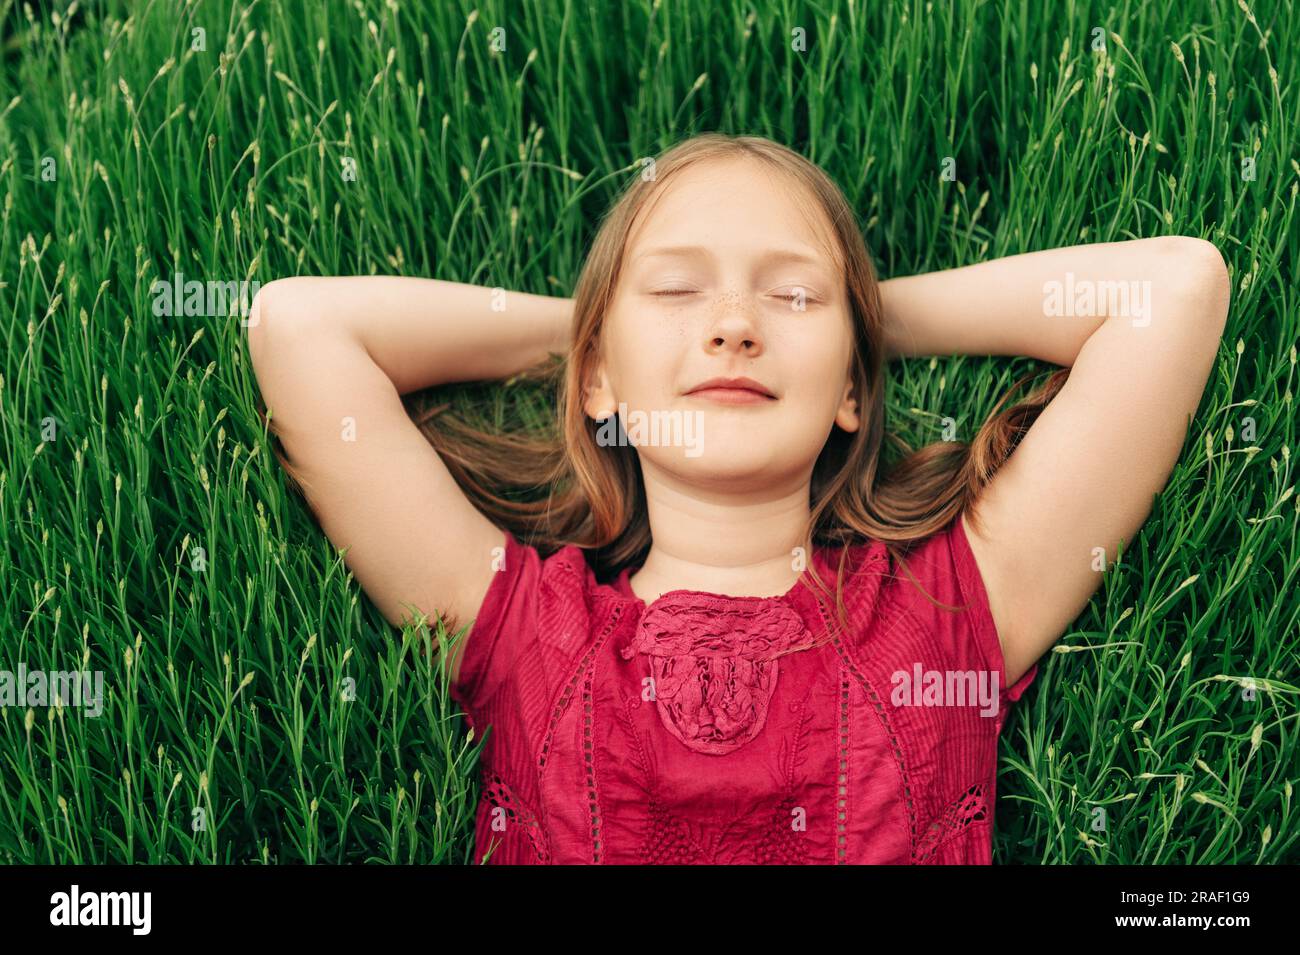 Süßes kleines Mädchen, das auf hellgrünem Gras liegt, die Arme hinter dem Kopf hält, die Augen geschlossen Stockfoto